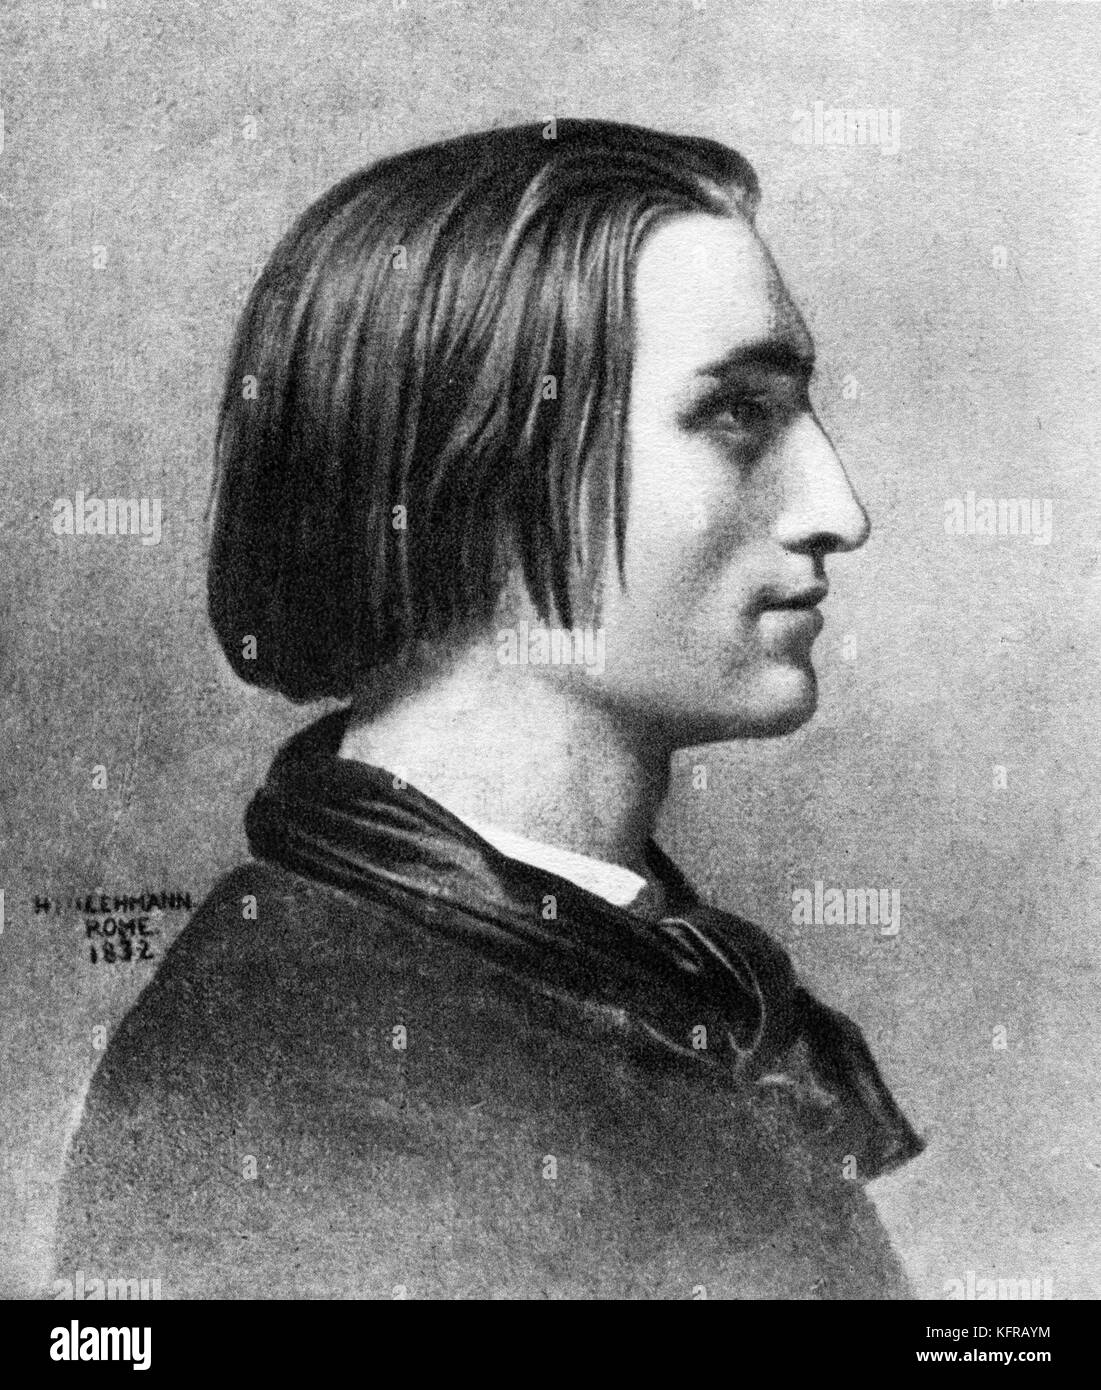 Franz Liszt - nach Portrait von Henri Lehmann, C. 1839, Rom, Italien. Ungarische Pianist und Komponist, 22. Oktober 1811 - vom 31. Juli 1886. Stockfoto